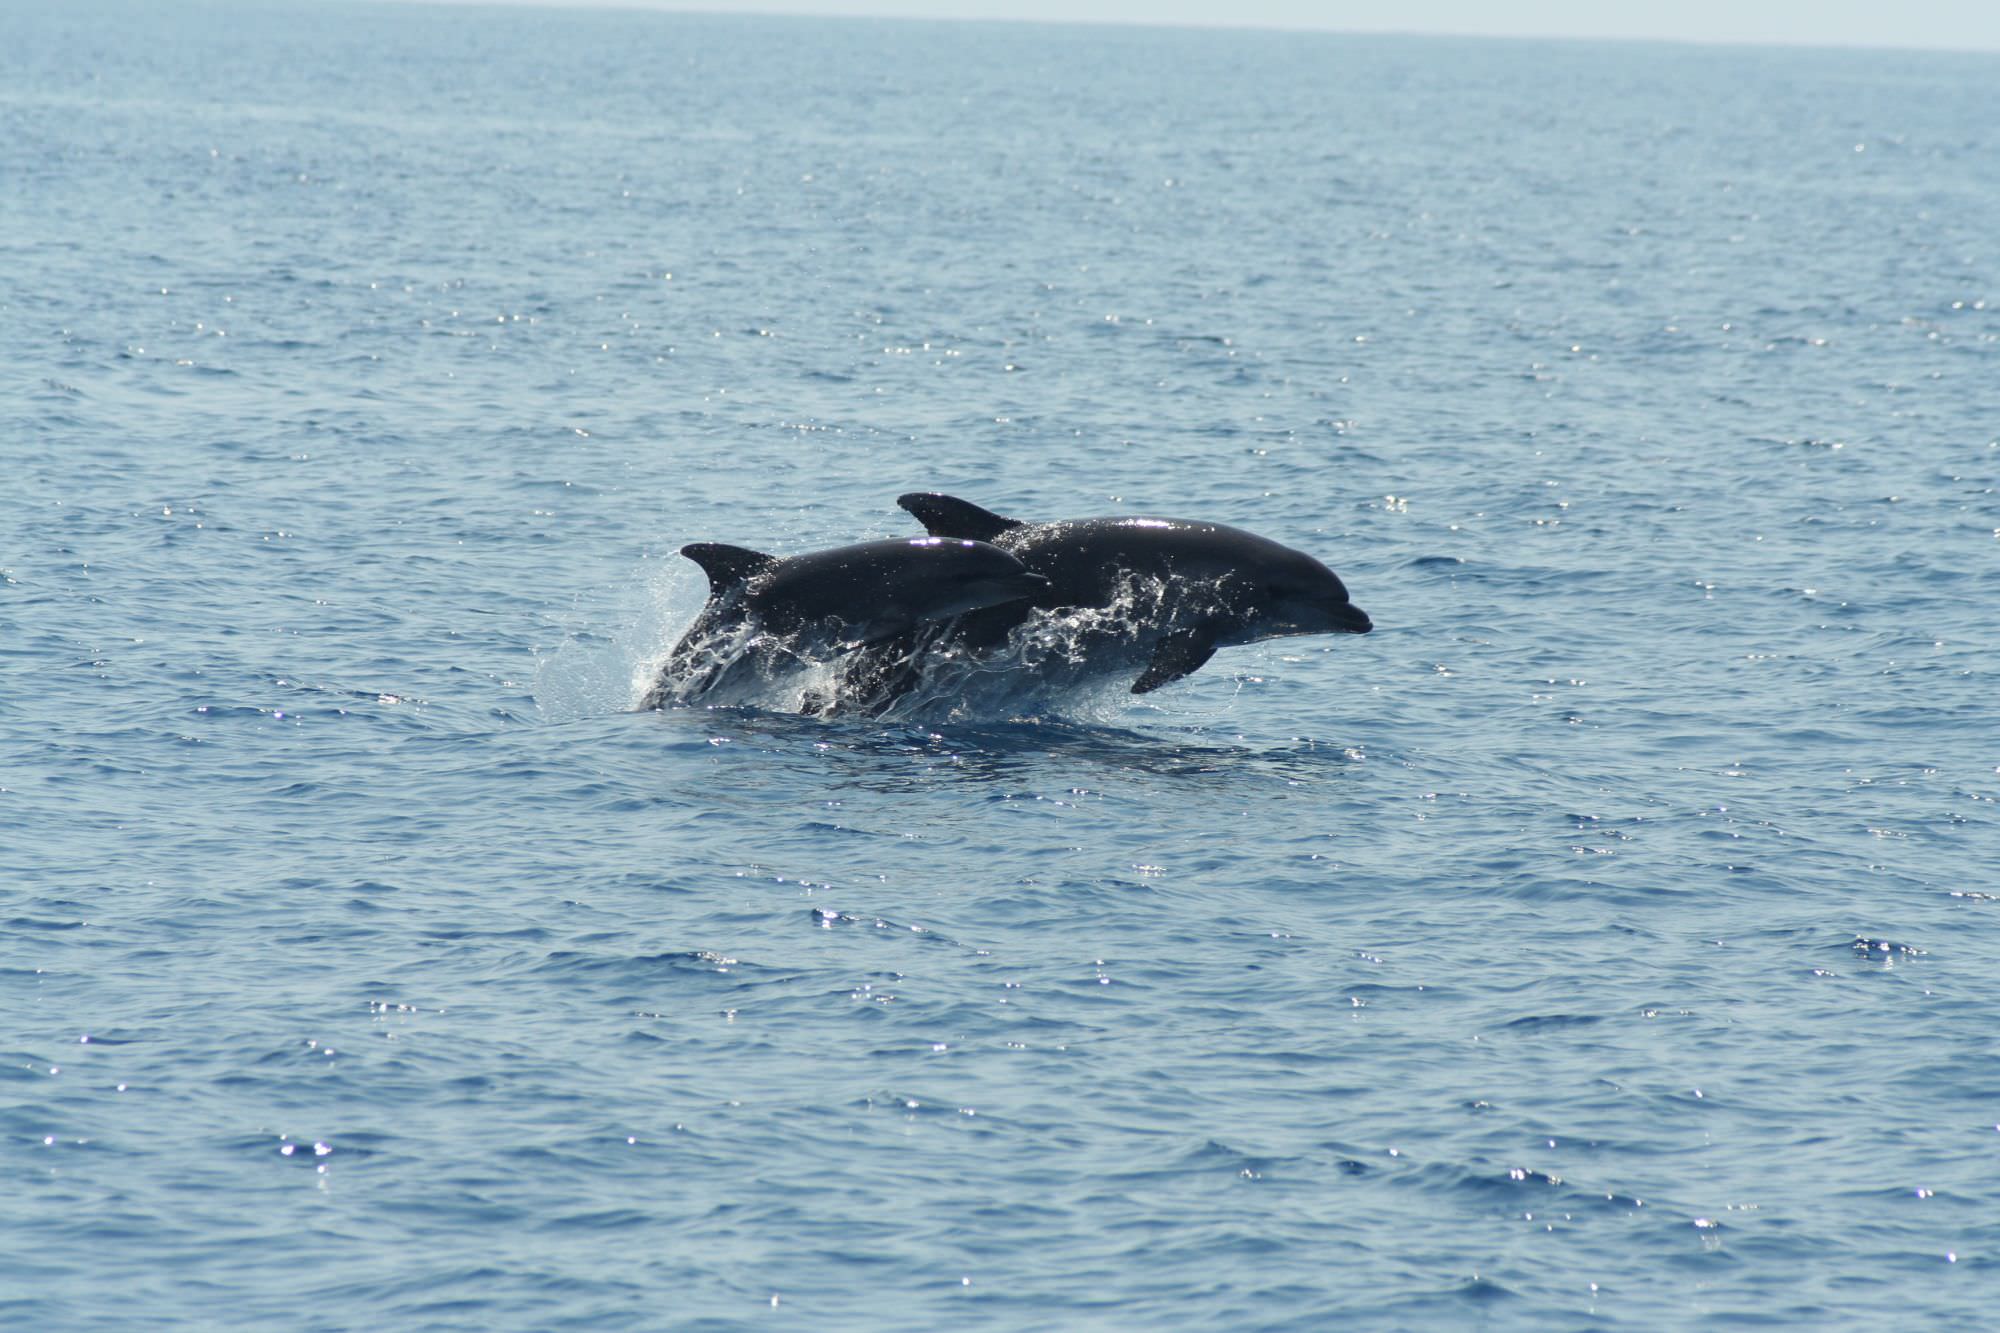 Santuario dei cetacei, il Parco aderisce al Partenariato Pelagos: le azioni in corso per proteggere balene e delfini